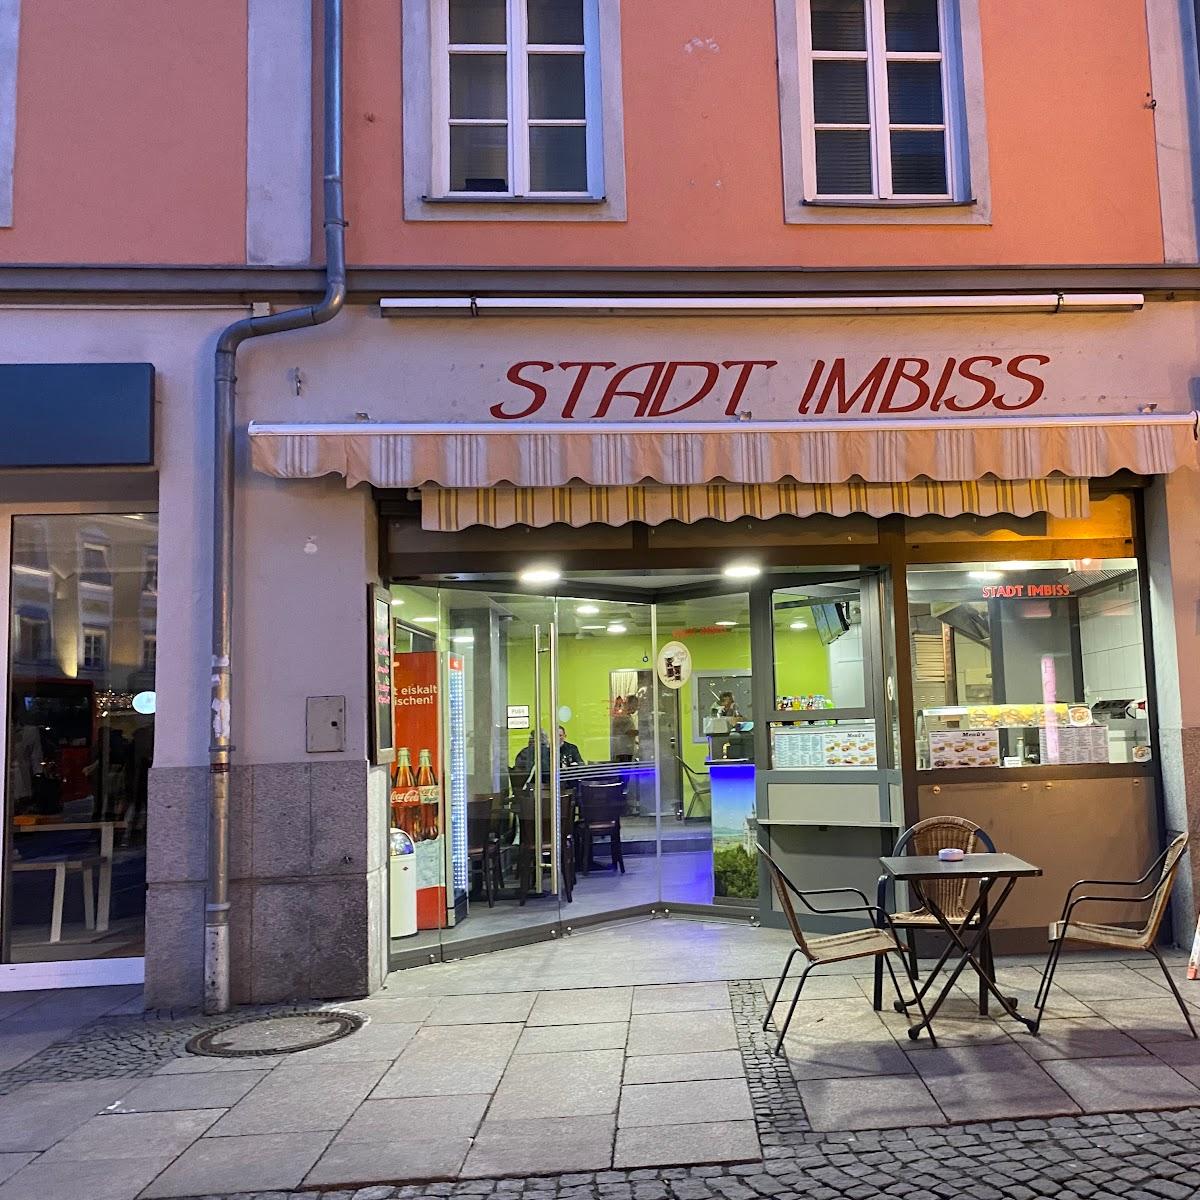 Restaurant "Stadt Imbiss" in Füssen